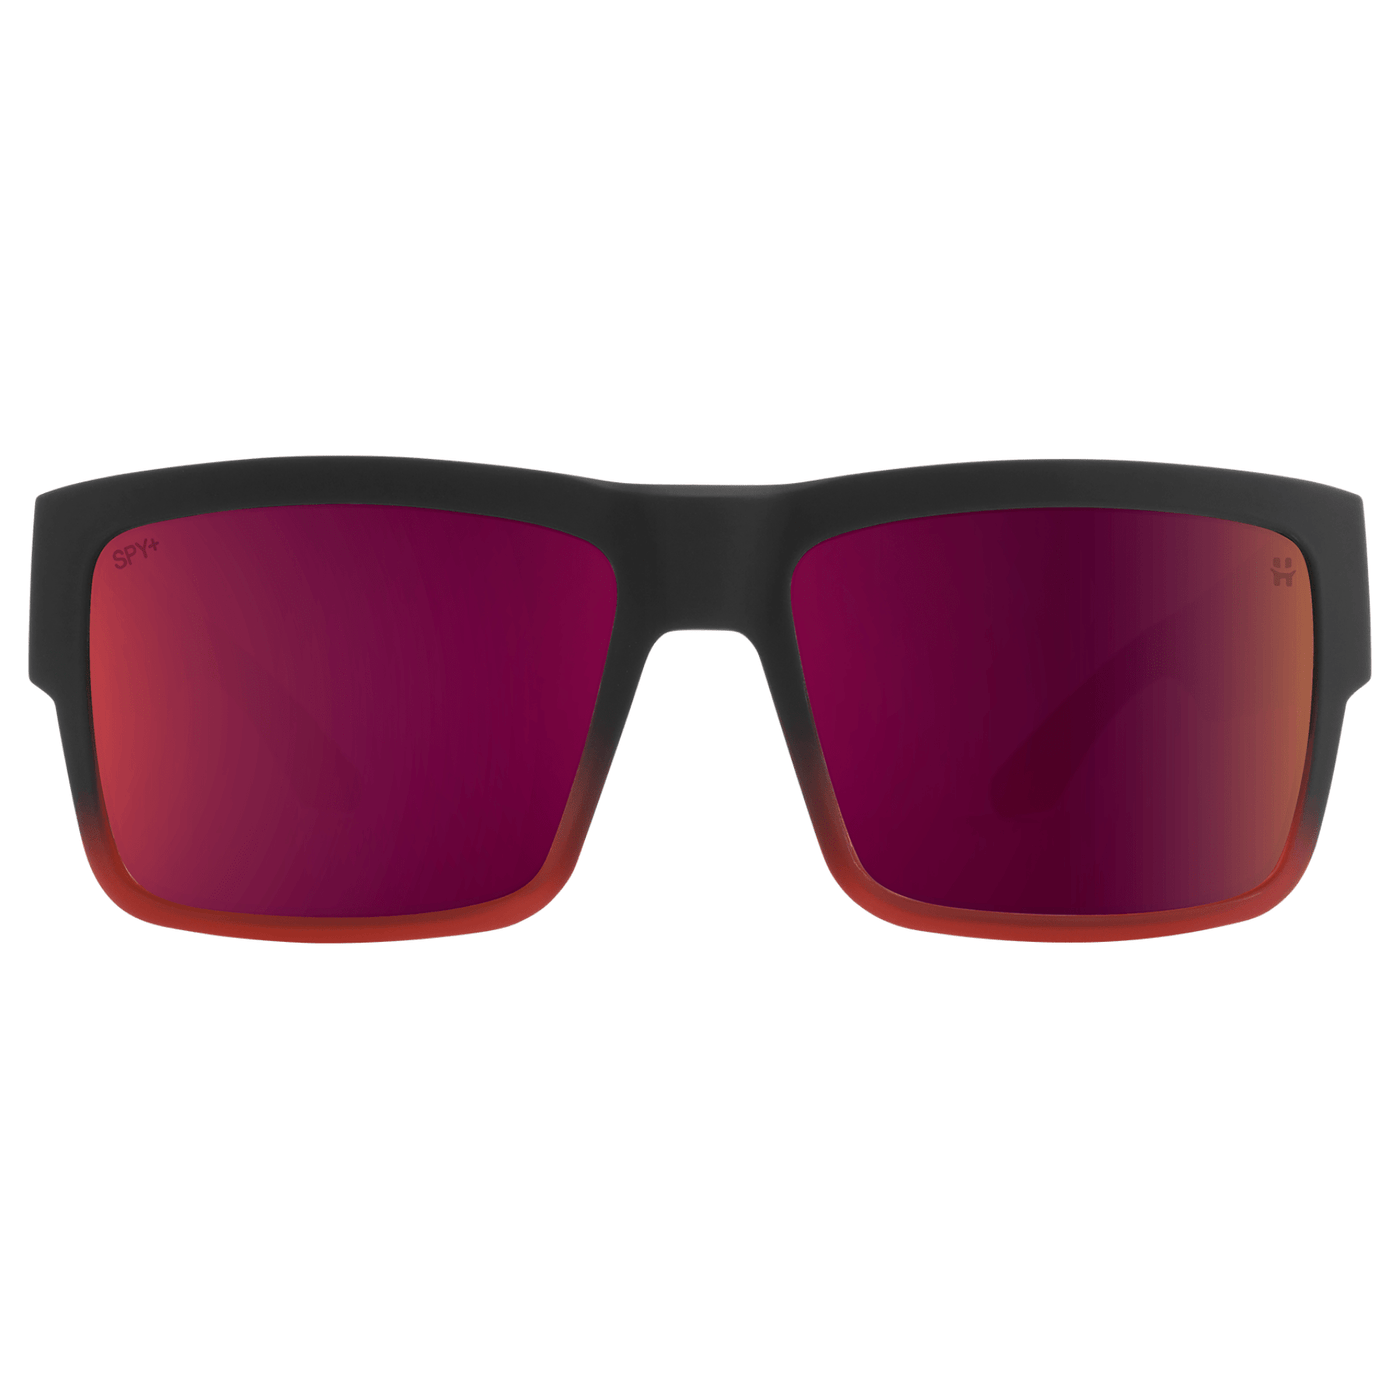 red plum mirrored sunglasses